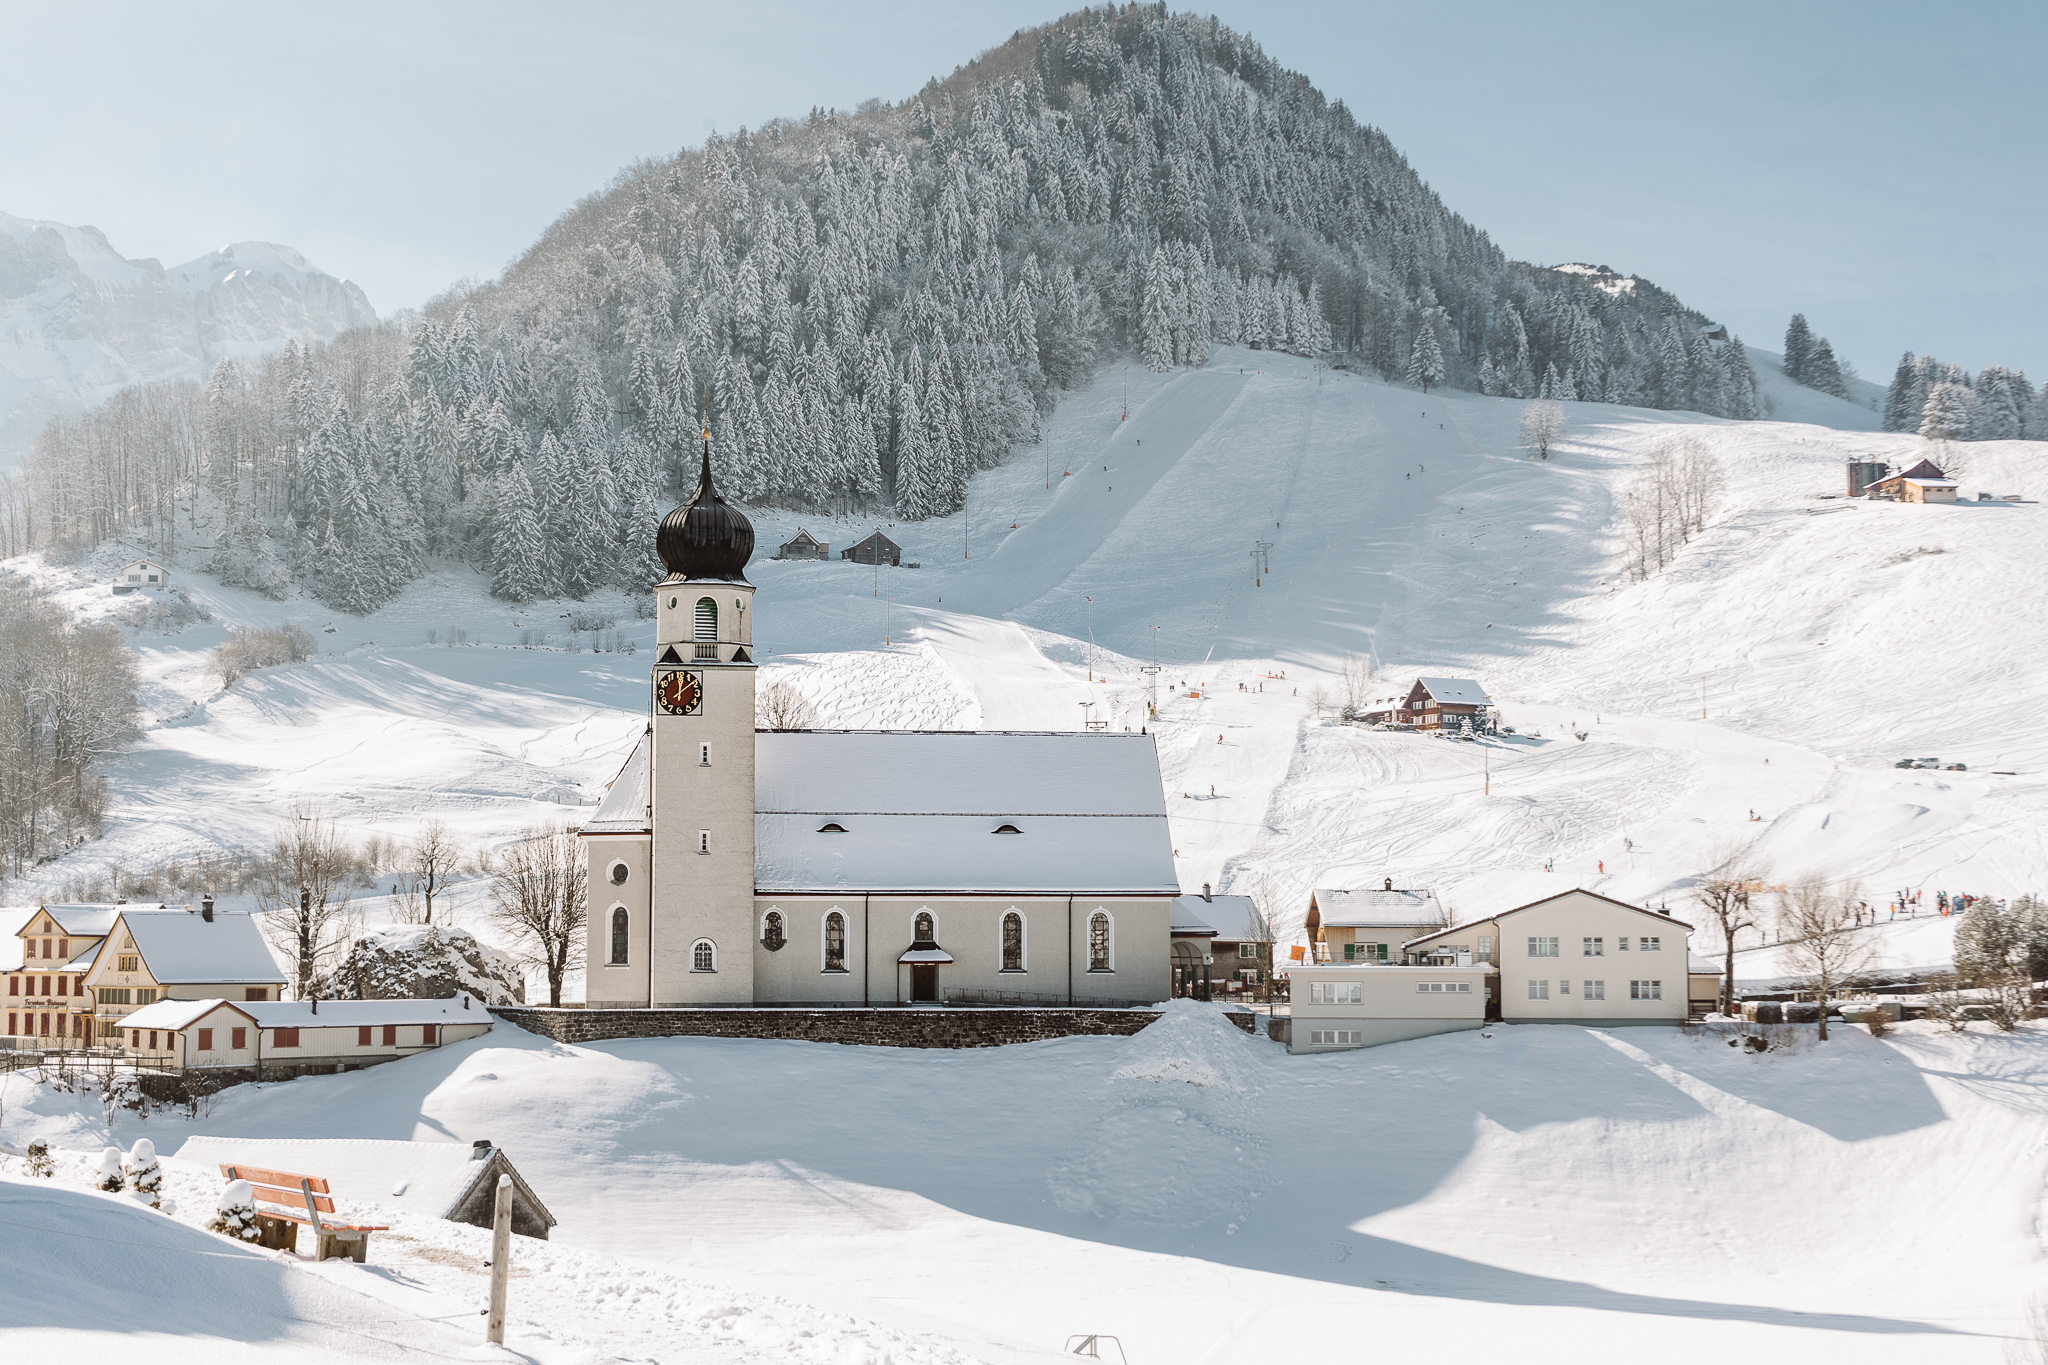 St. Martin Schwende church in appenzell with snow all around